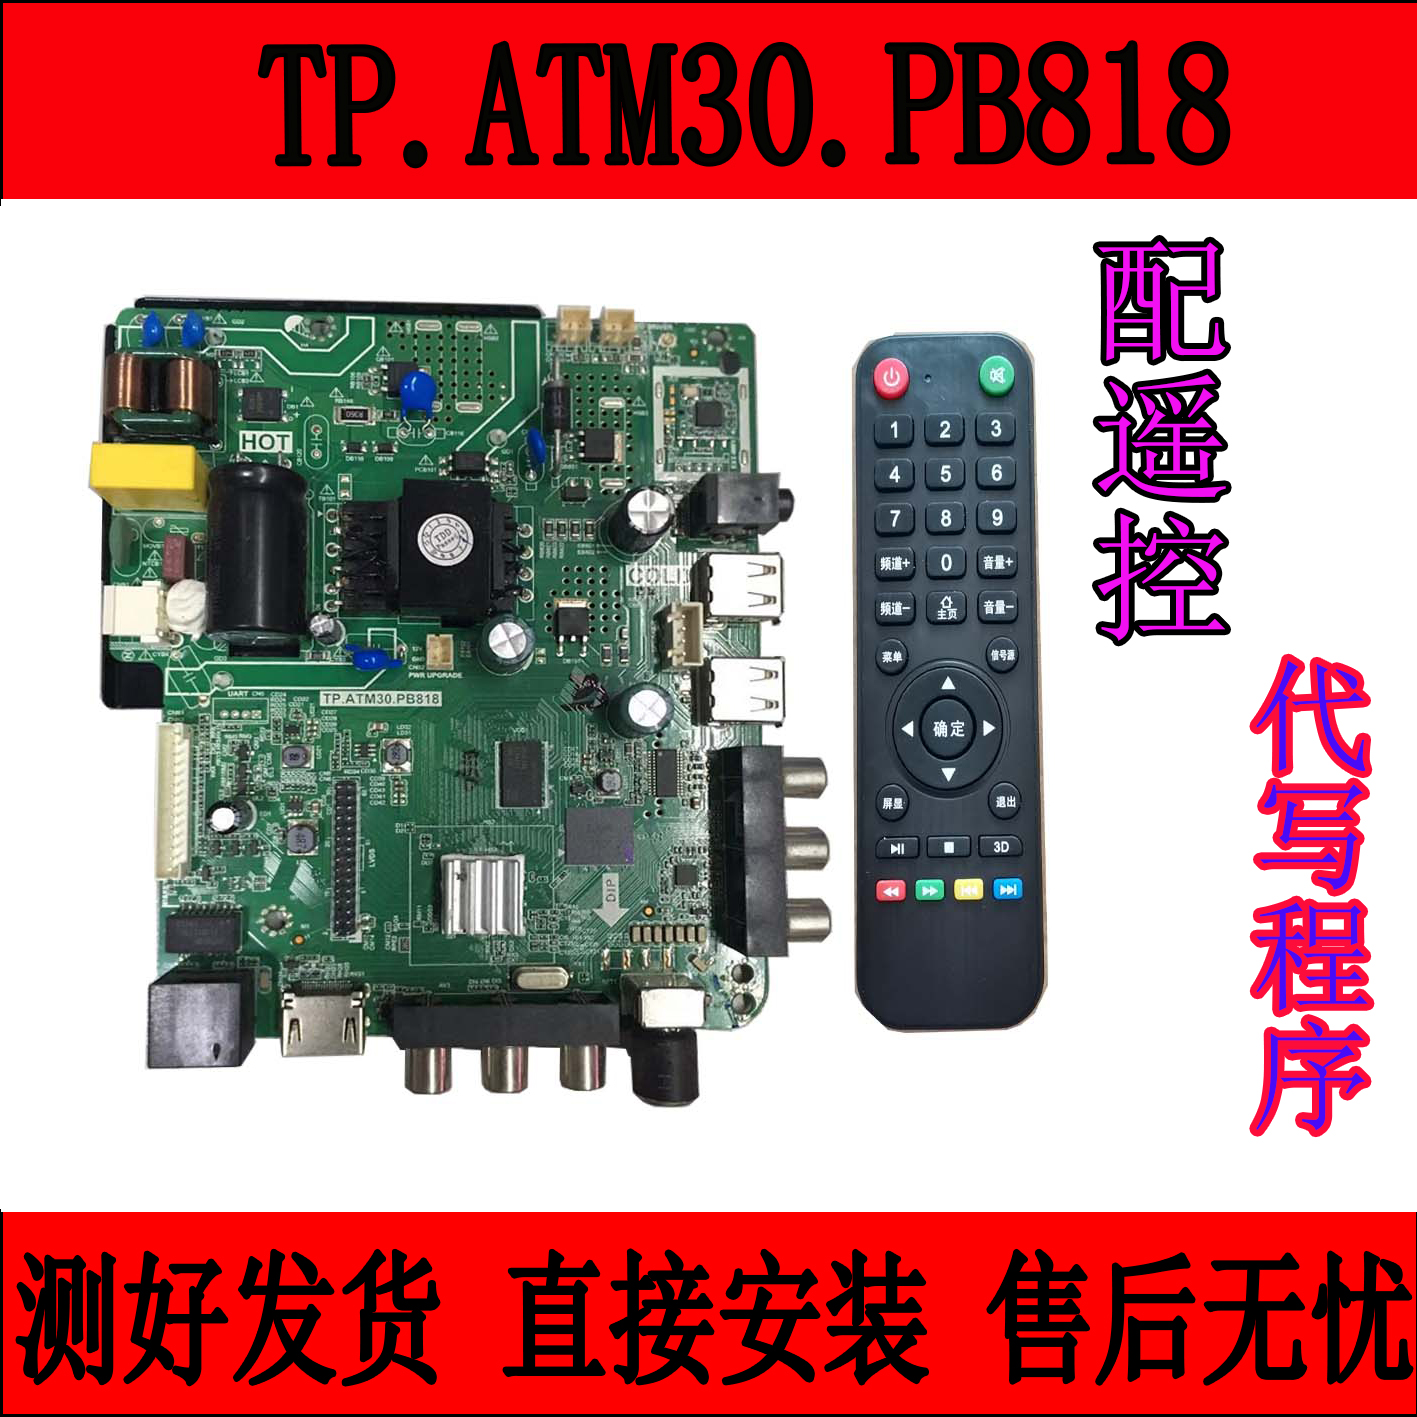 适用TP. ATM30.PB818  MS358.PB818 TP.ATM20.PB819 网络电视主板 电子元器件市场 显示屏/LCD液晶屏/LED屏/TFT屏 原图主图